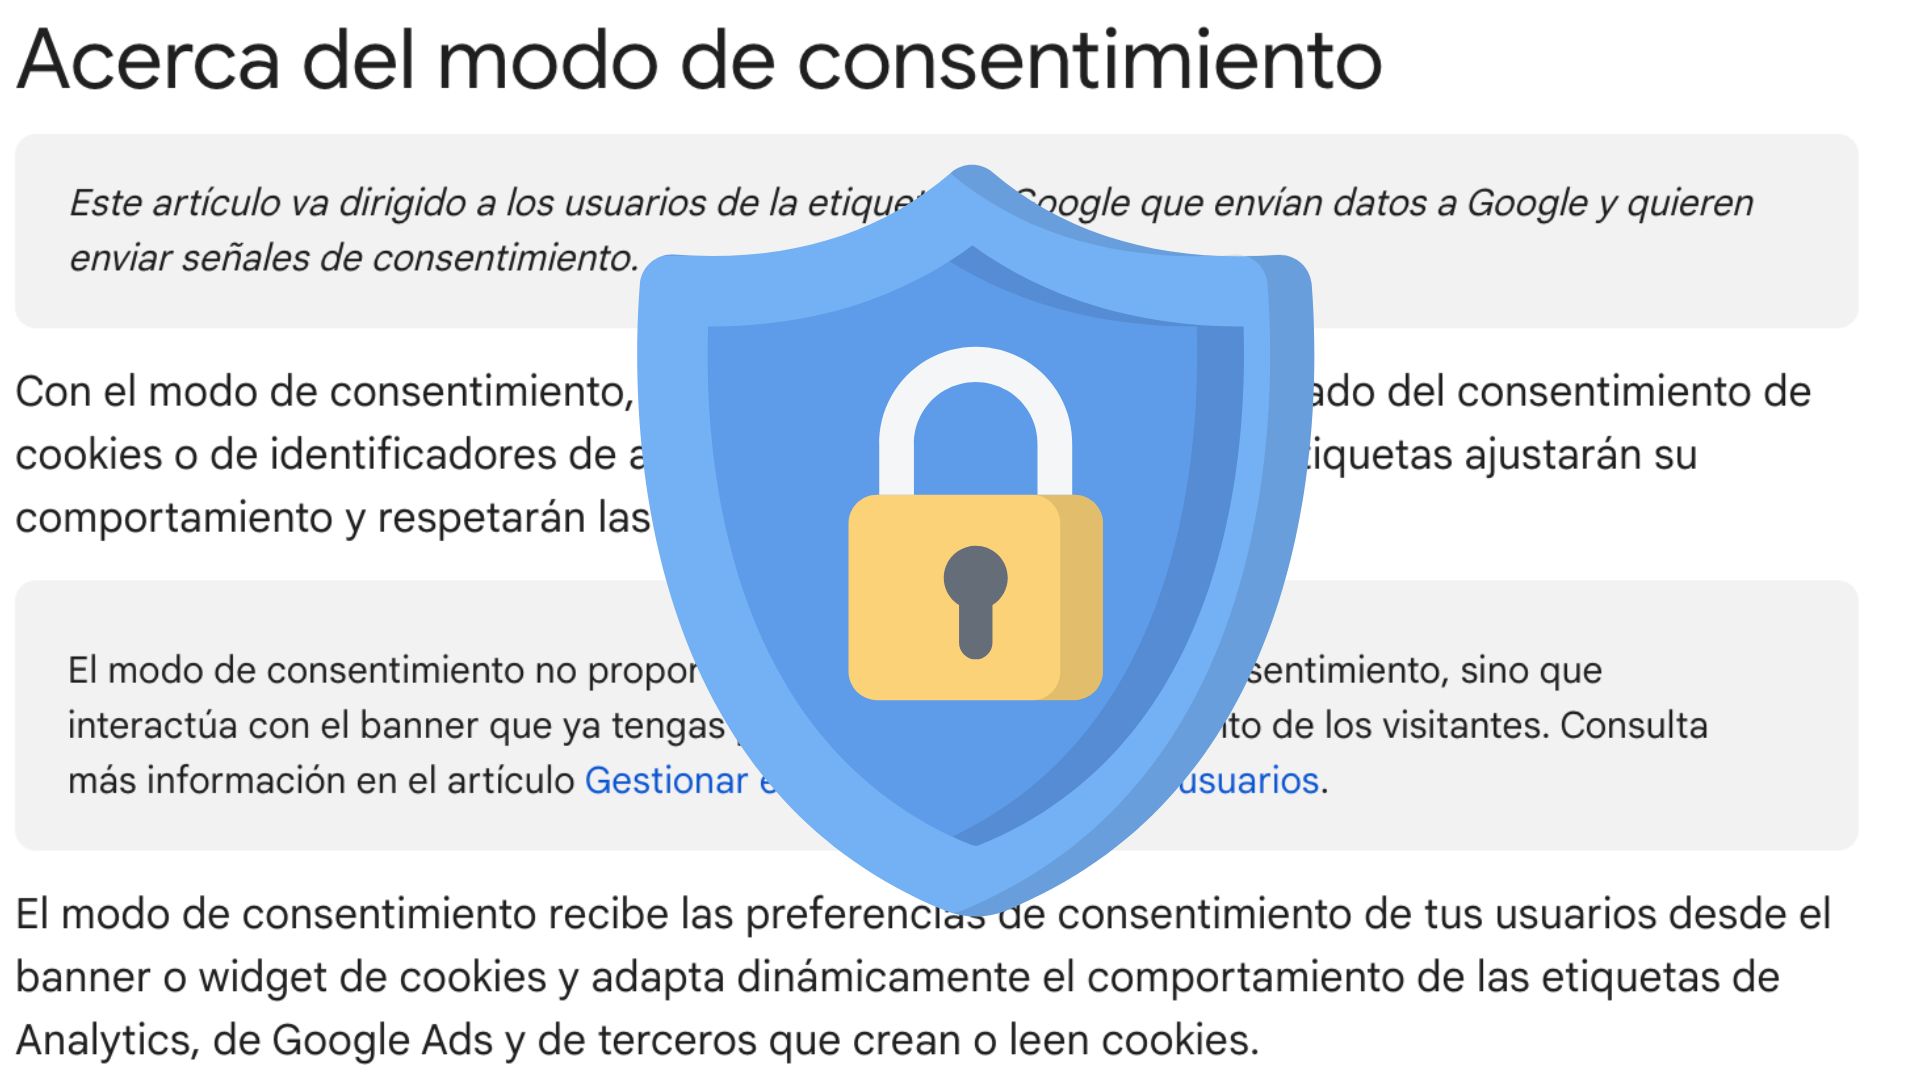 Consent Mode V2 Avanzado. ¿Respeta la privacidad del usuario o no?